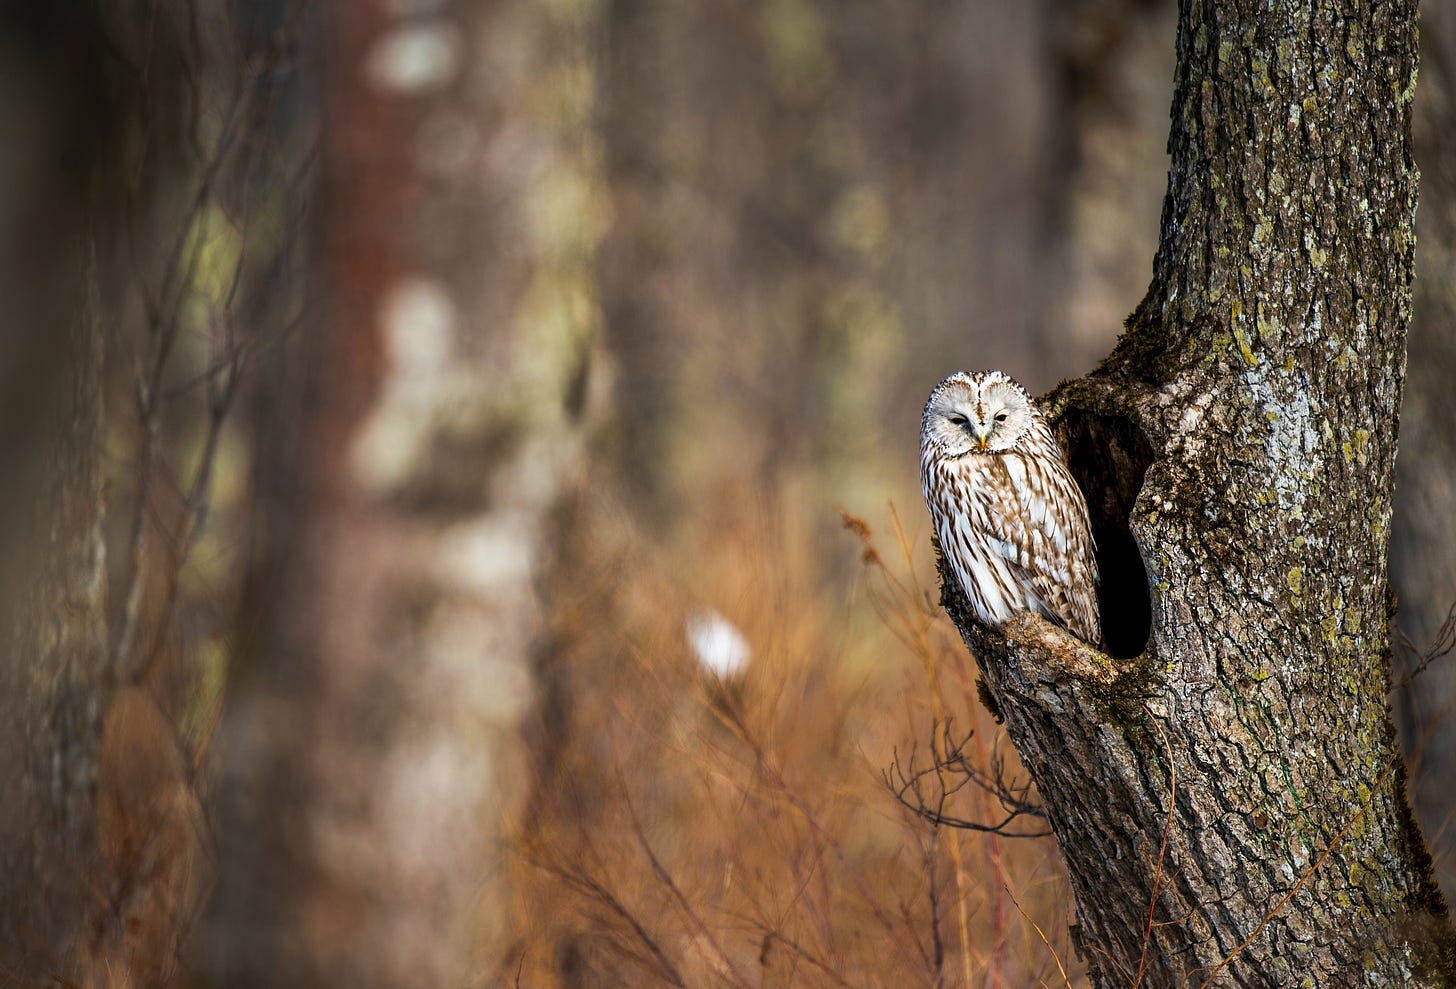 Boks, K. (2021). Owl perching in a hollow tree